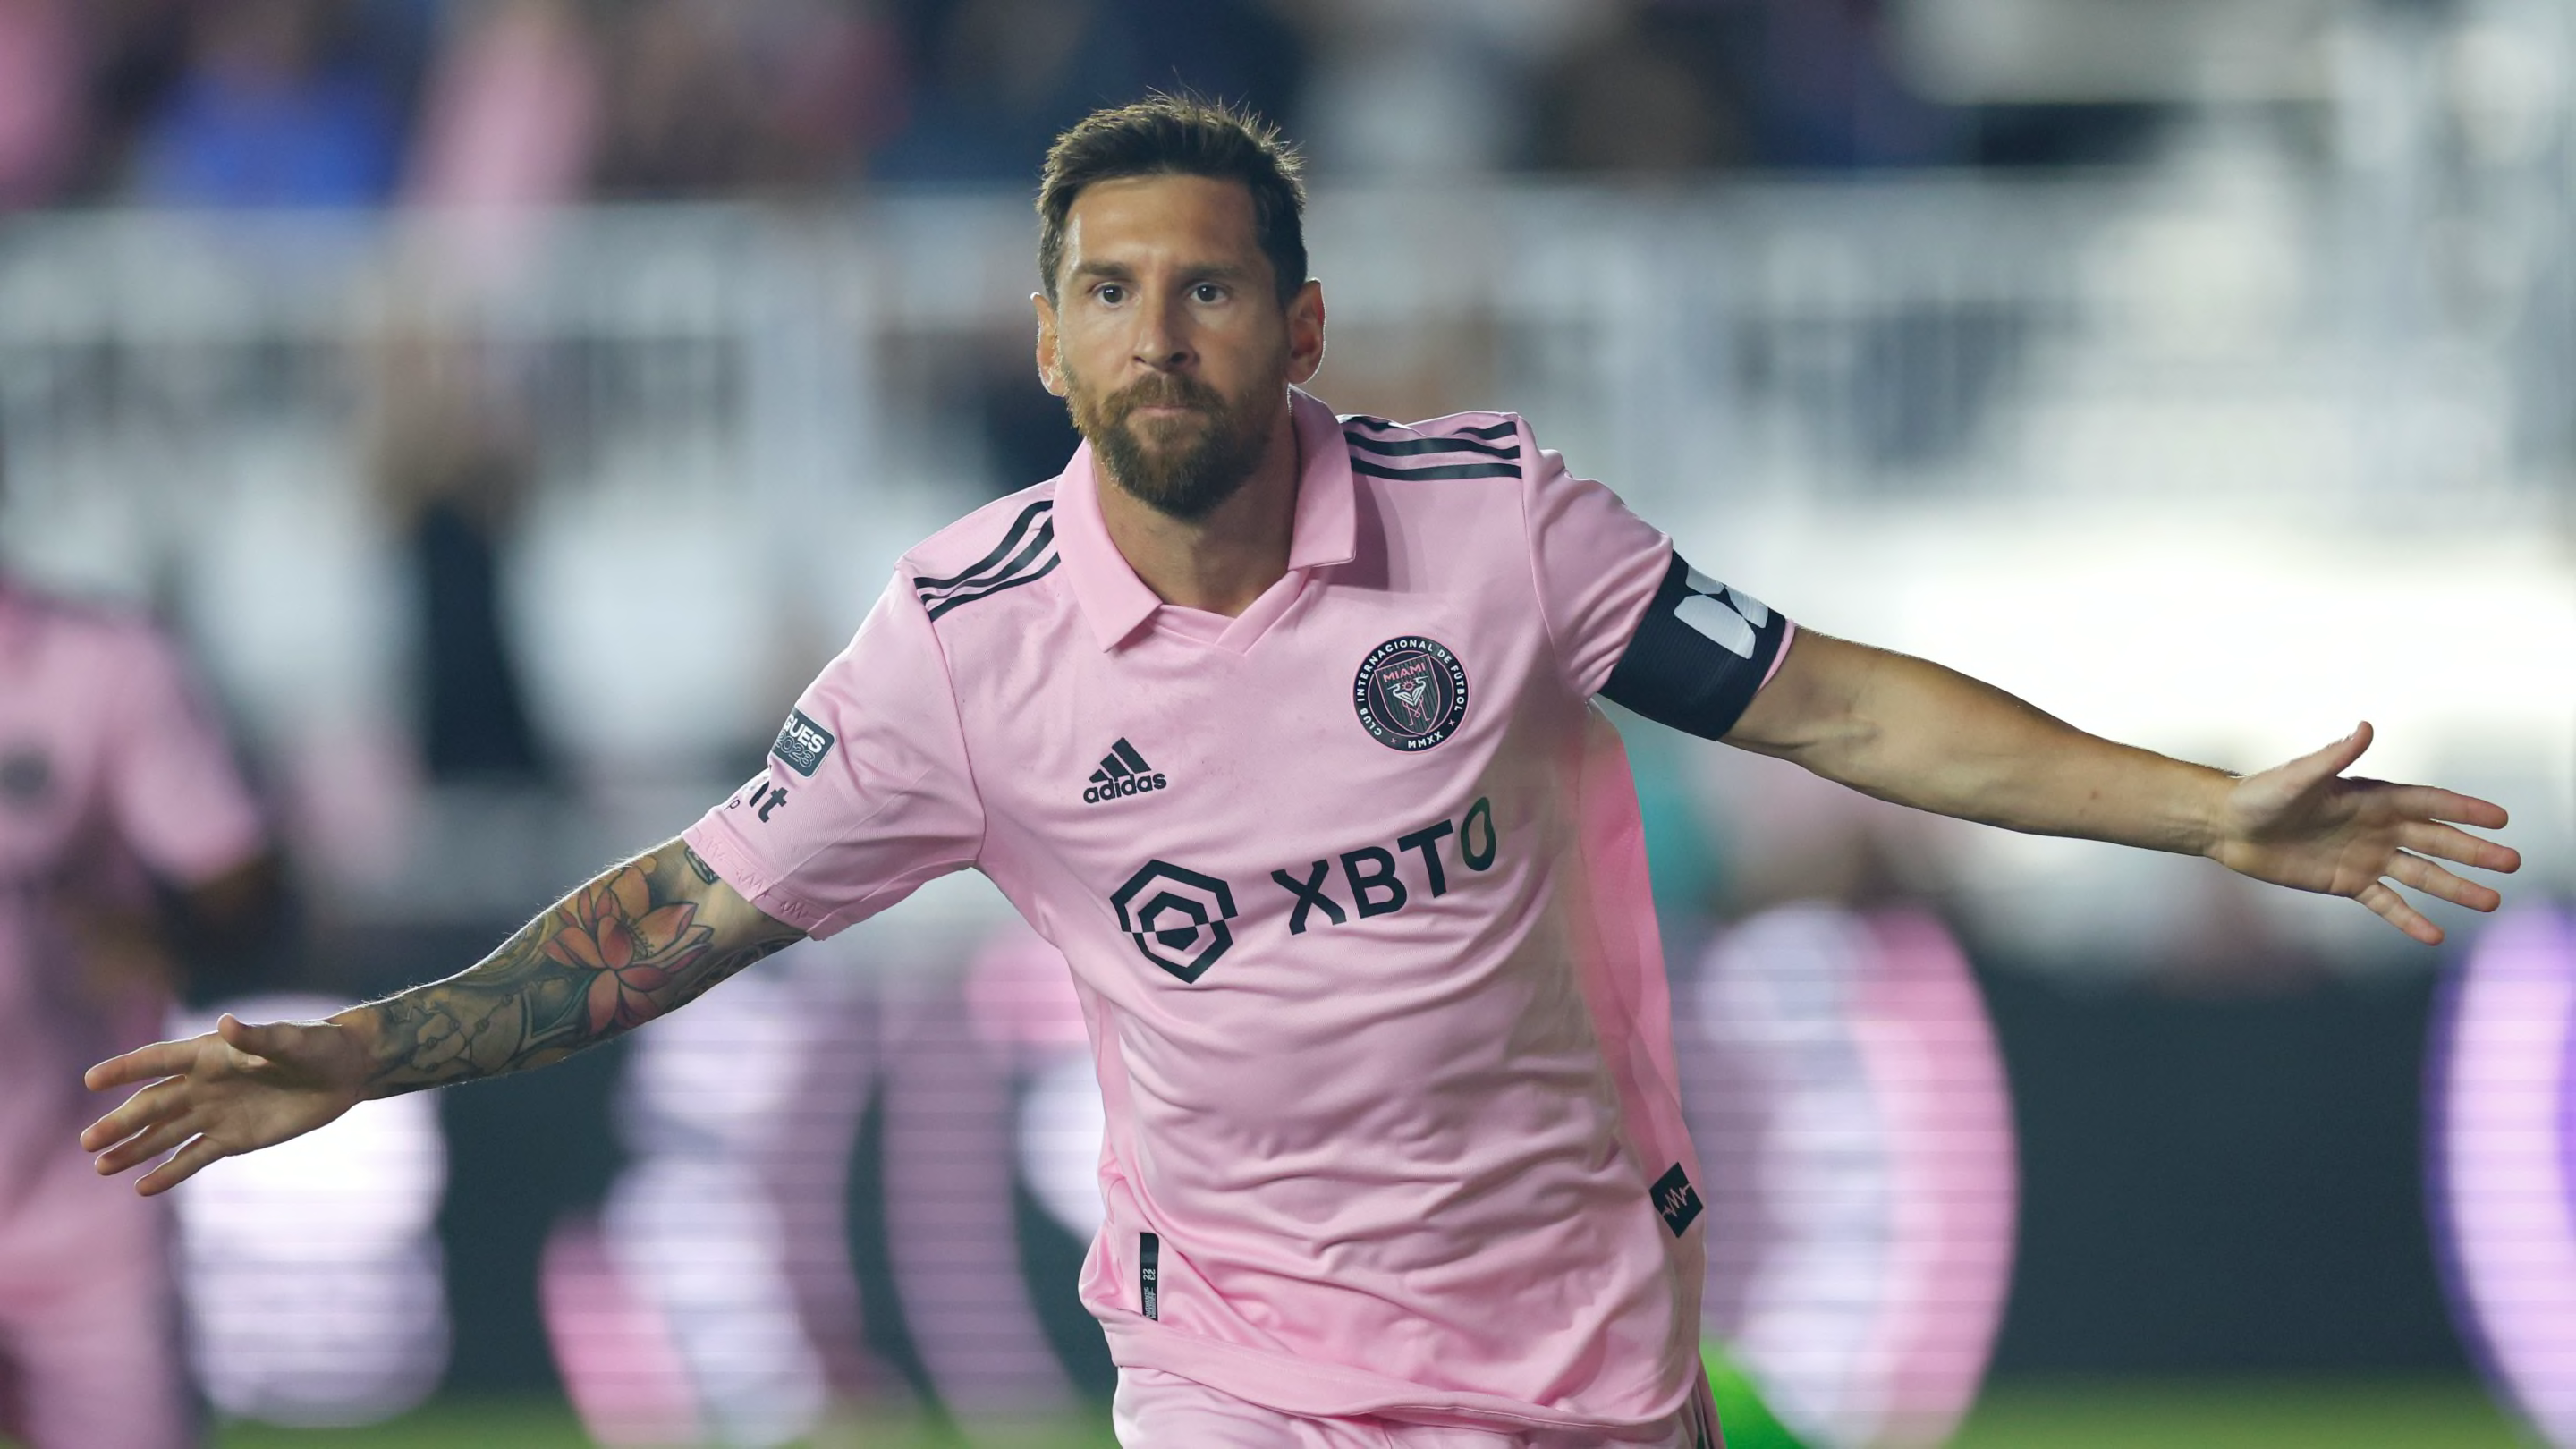 VIDEO : Les images du nouveau doublé de Lionel Messi qui affole les compteurs avec l'Inter Miami